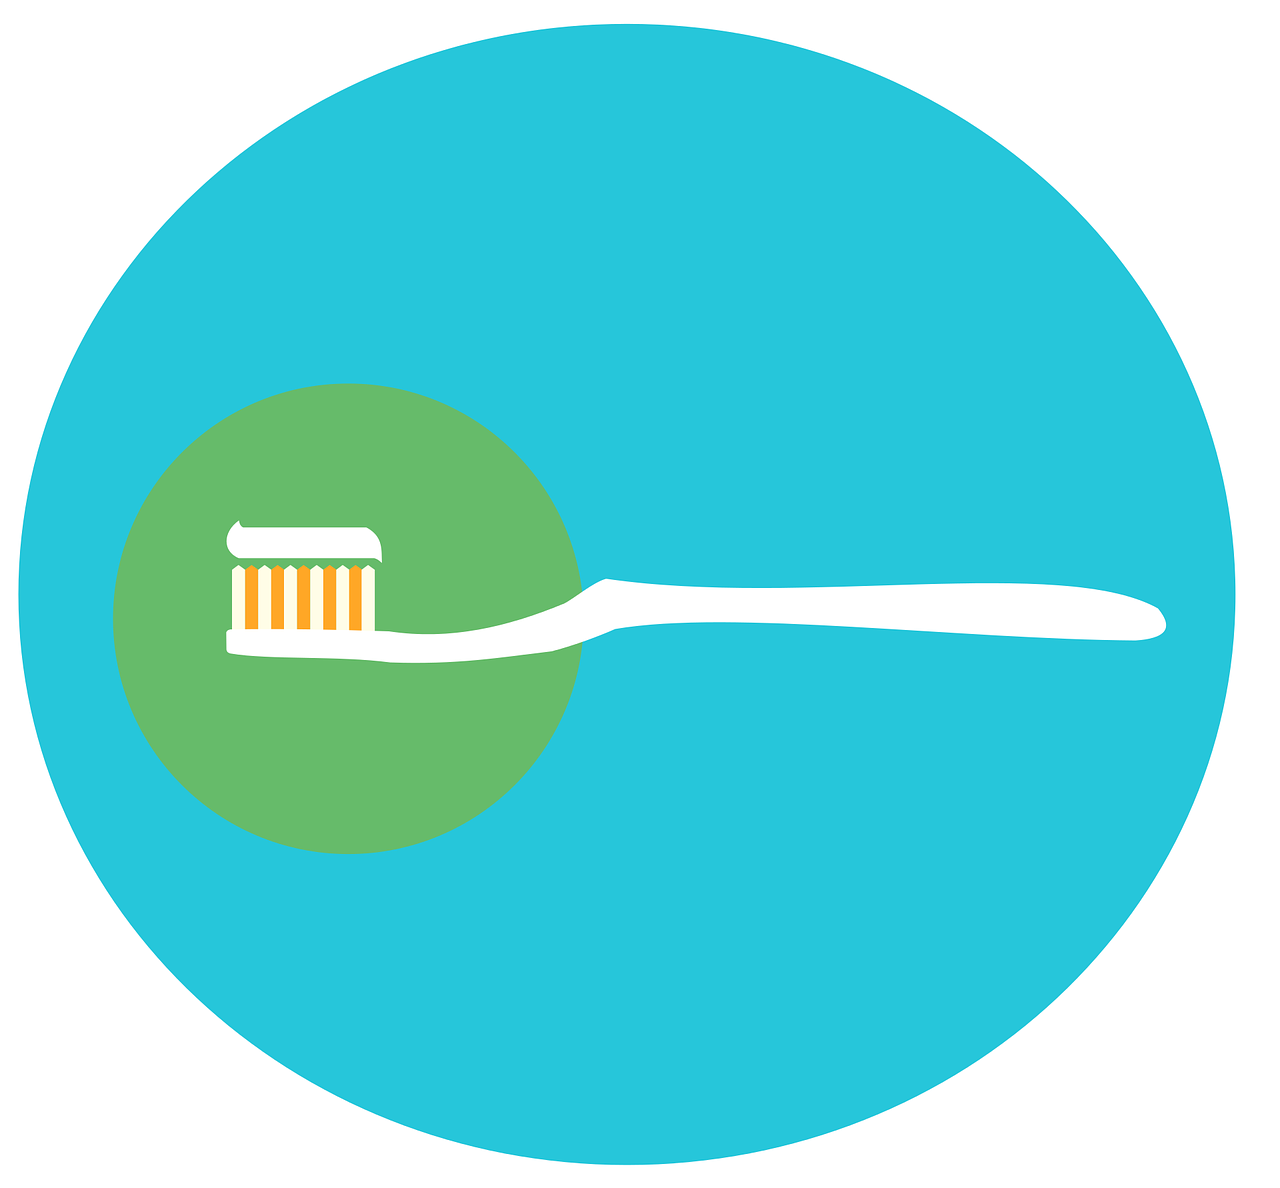 Irreführung beim Verkauf von elektrischen Zahnbürsten: Ultraschall-Zahnbürsten vs. Schallzahnbürsten